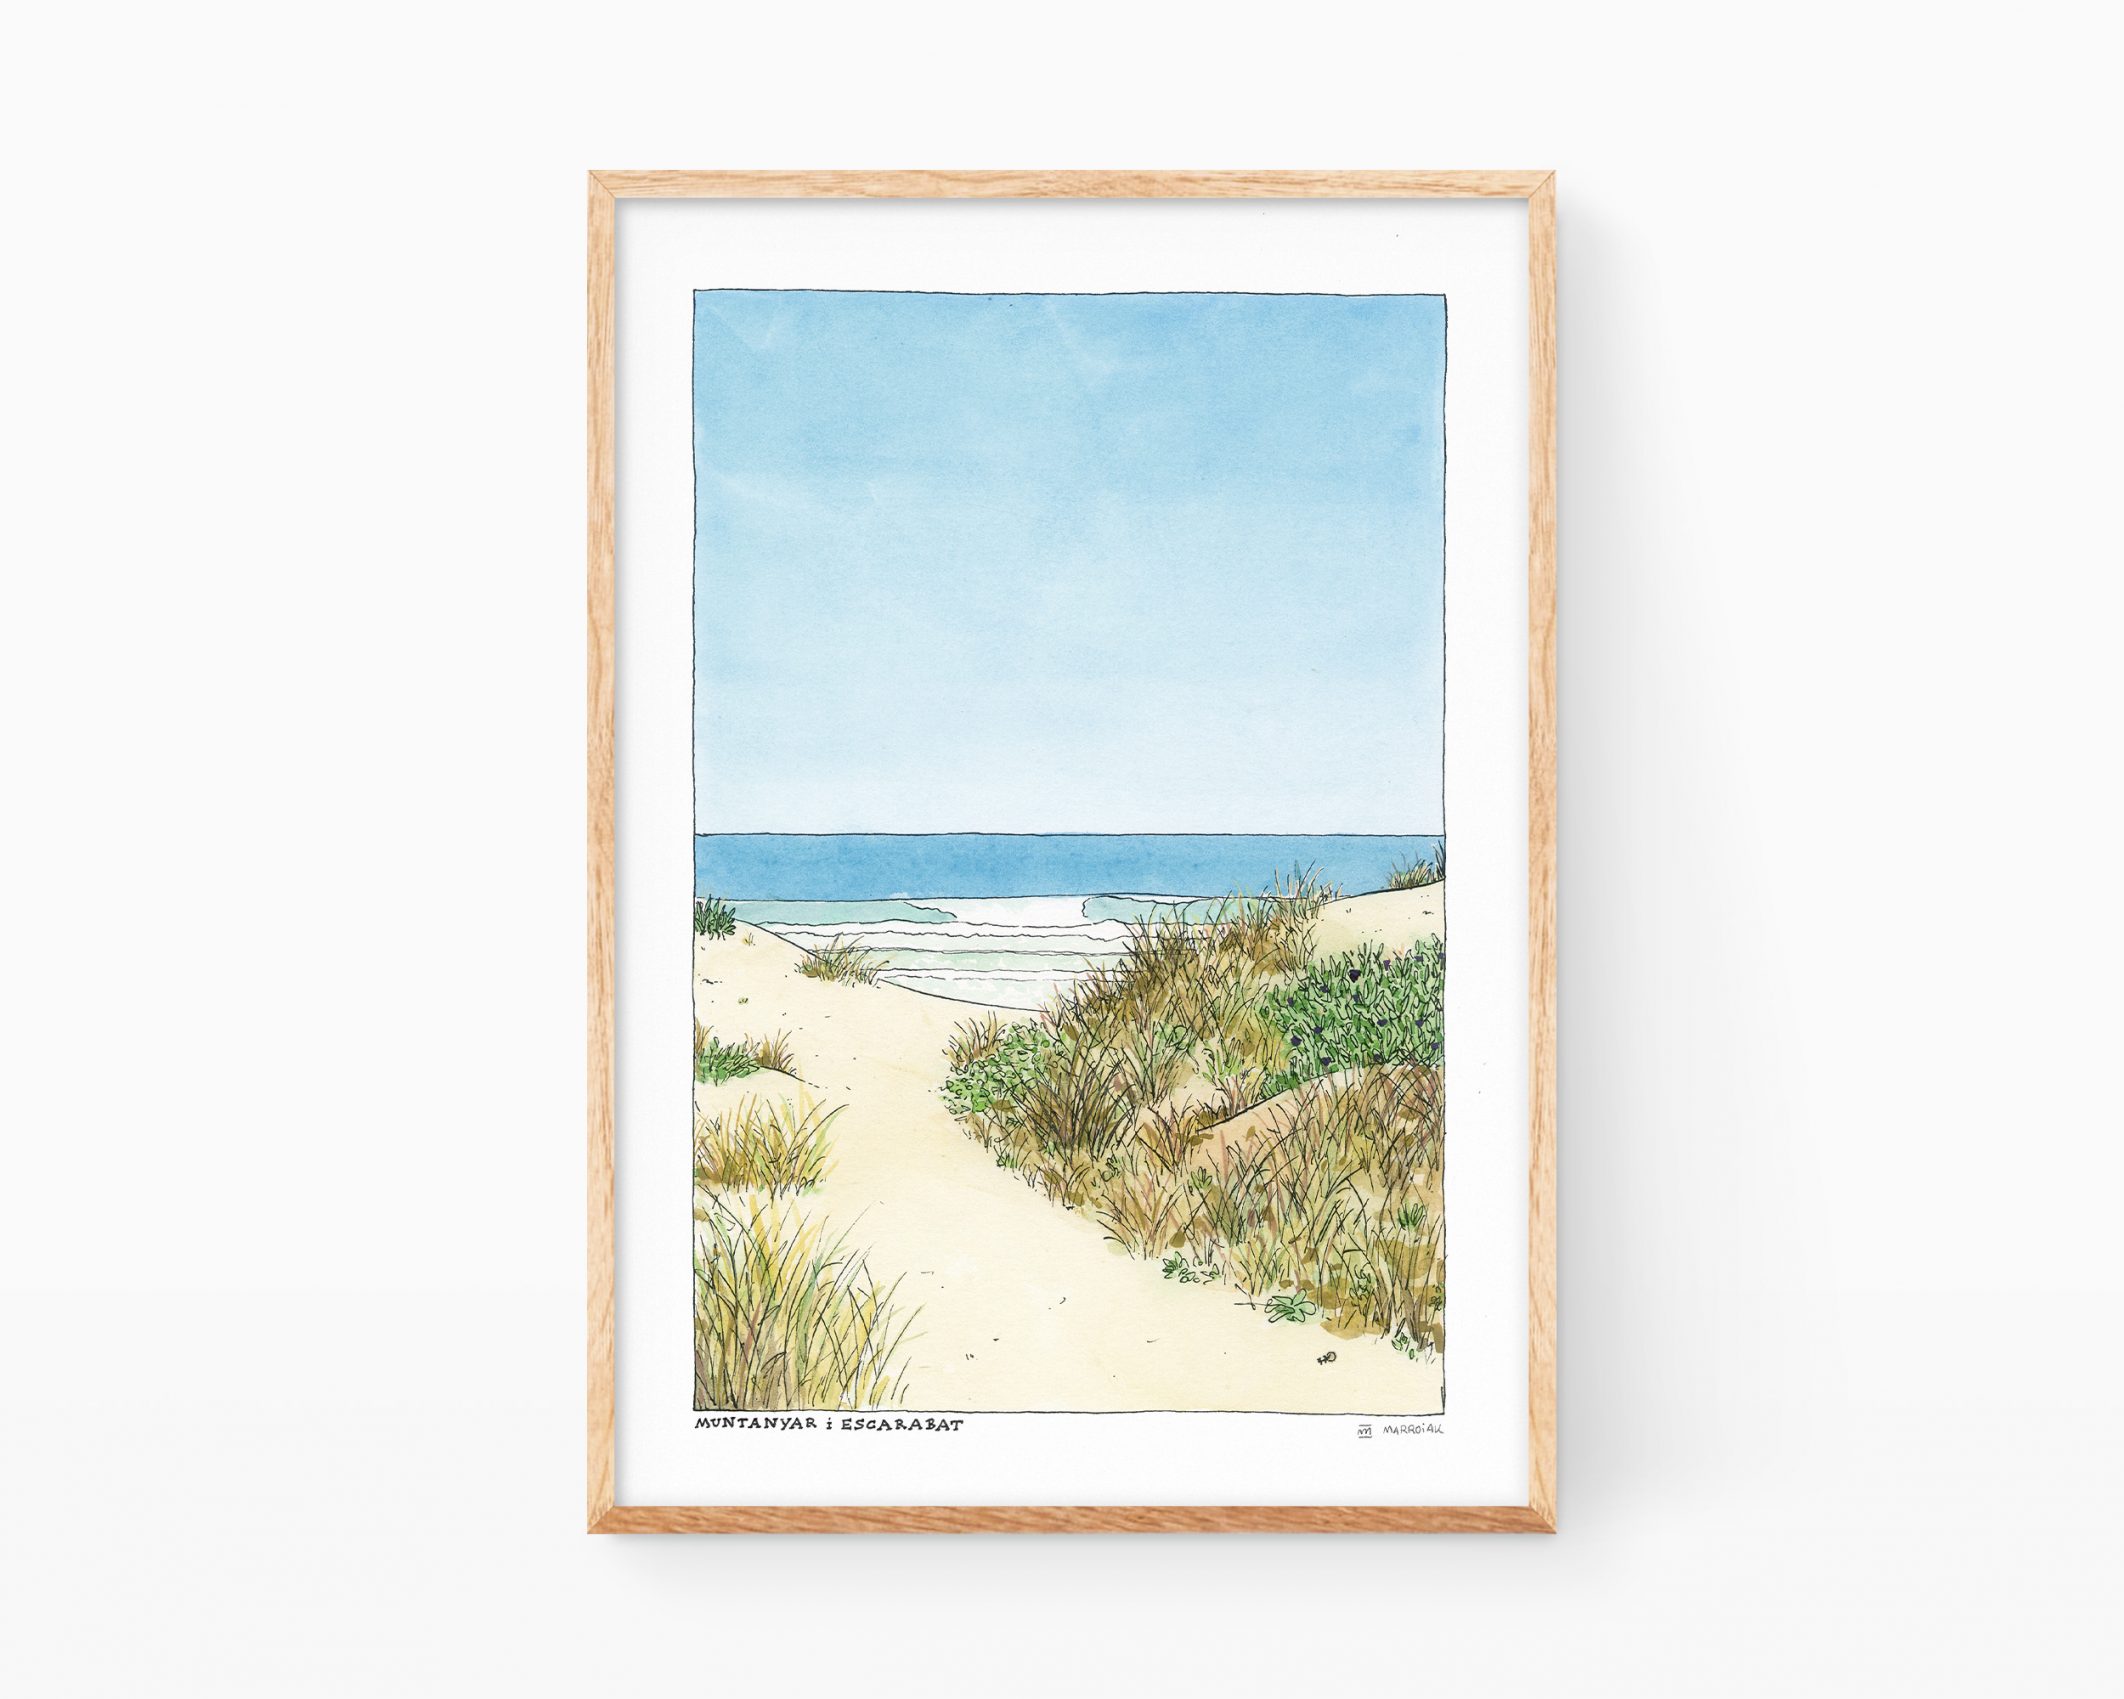 Cuadro decorativo para enmarcar con una ilustración en acuarela de una playa, unas dunas y un escarabajo. La lámina también incluye unas olas, el cielo y arena